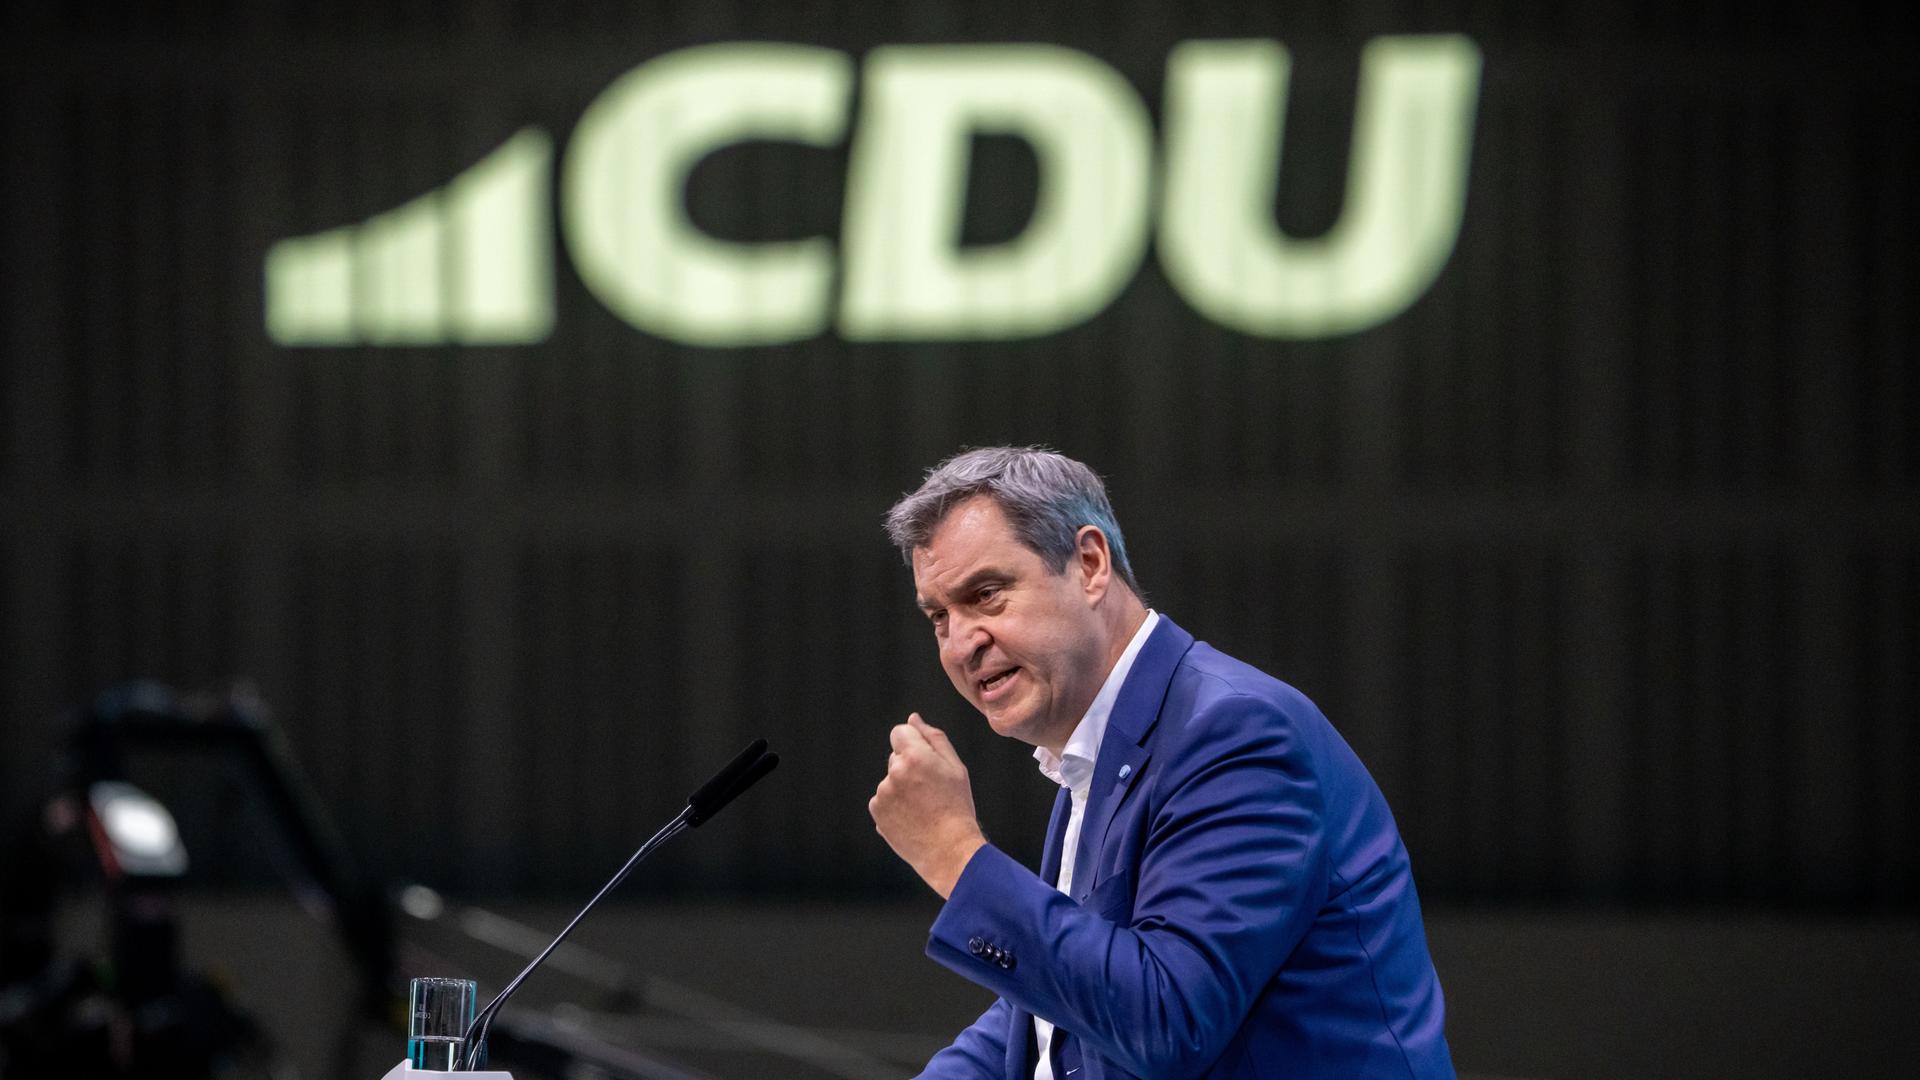 Der CSU-Vorsitzende und bayerische Ministerpräsident Markus Söder steht am Rednerpult. im Hintergrund ein Schriftzug der Schwesterpartei CDU.